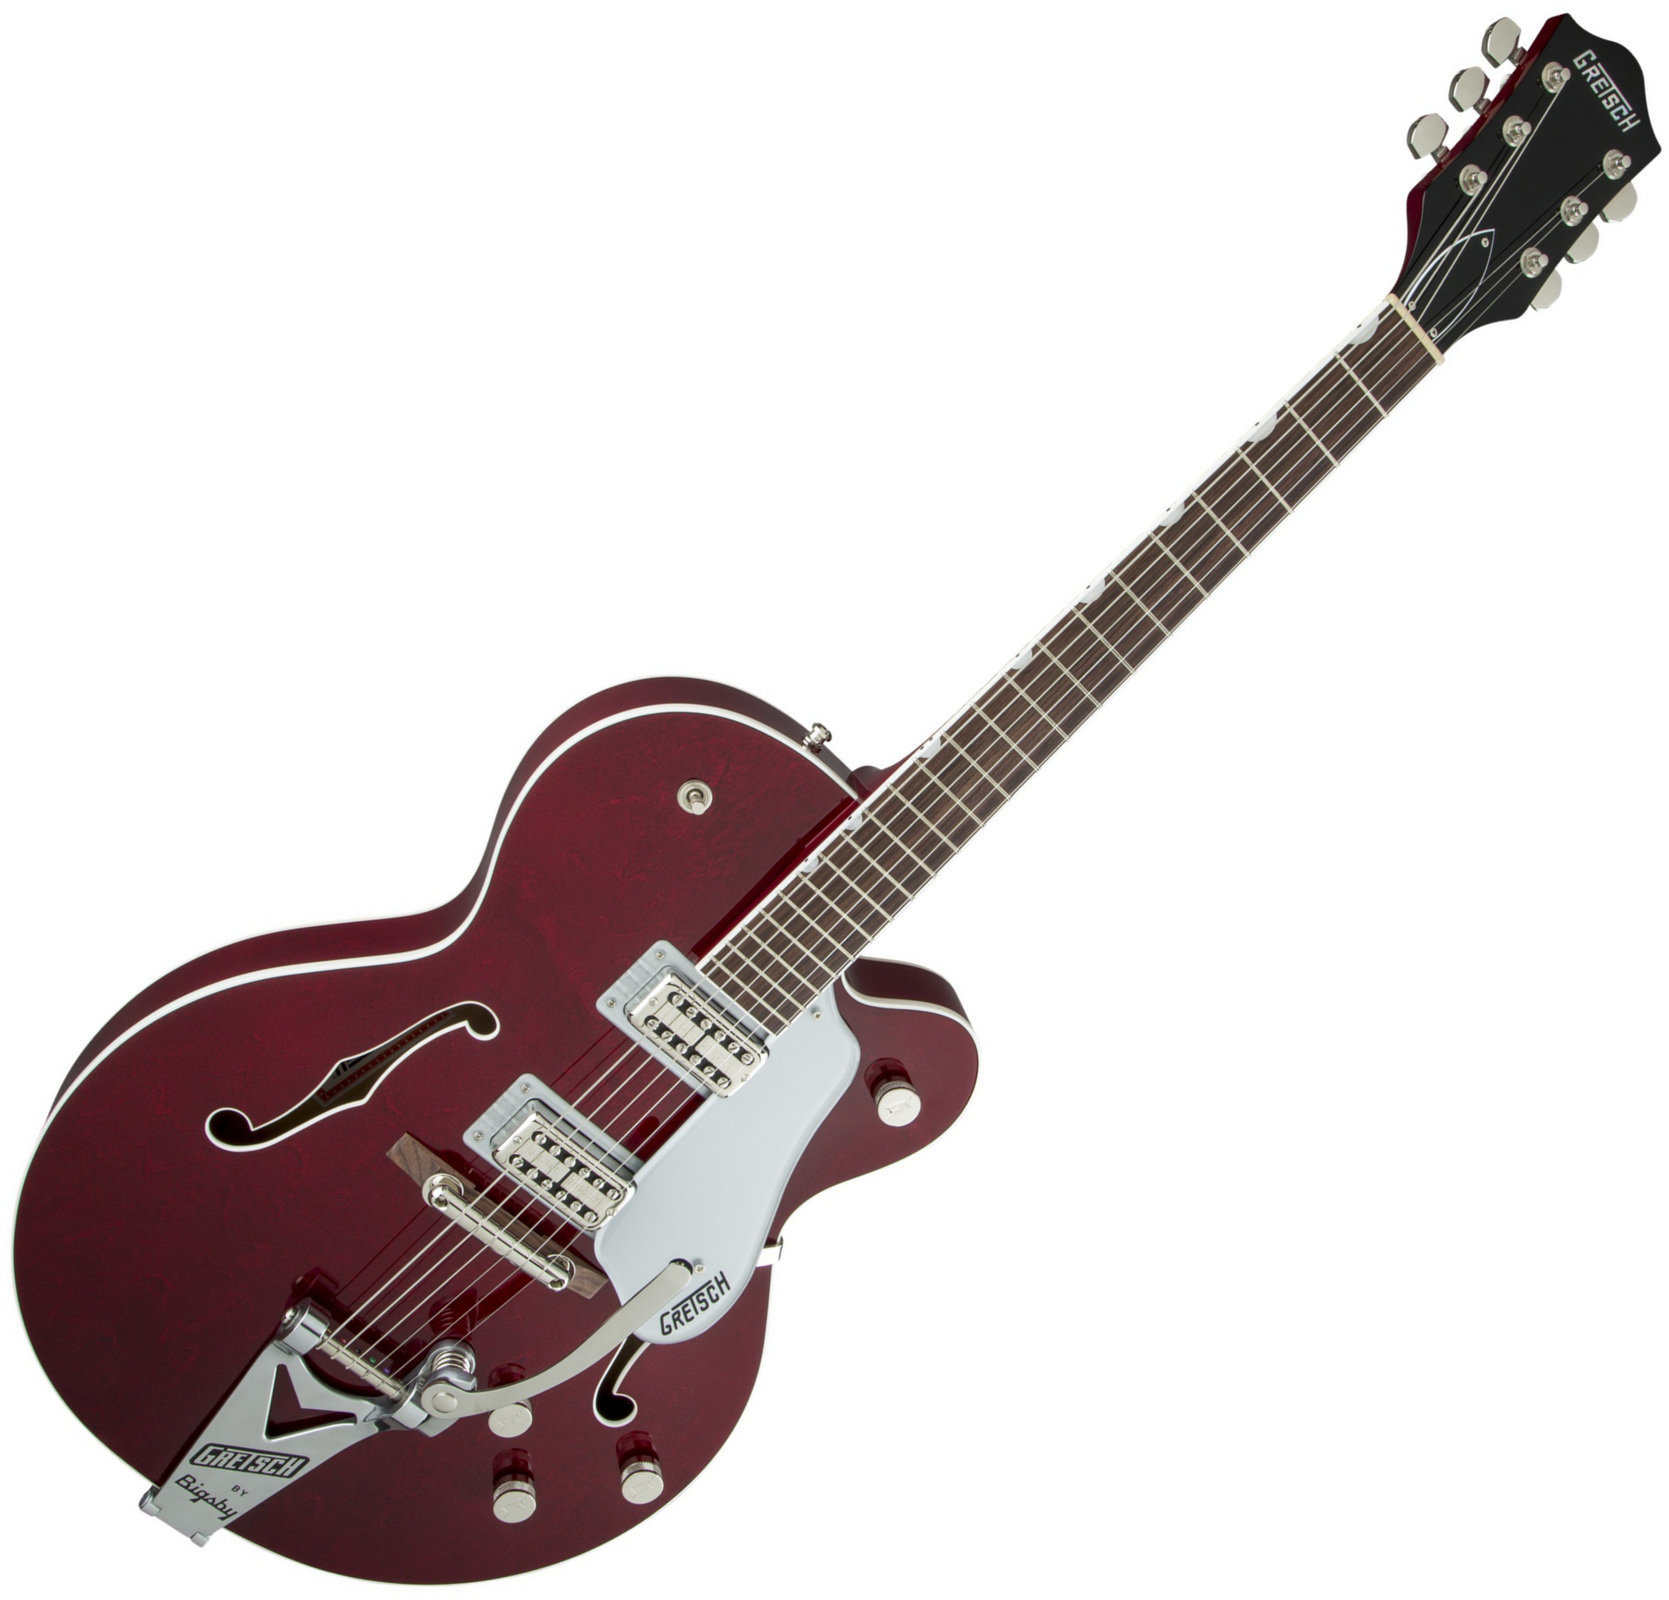 Ημιακουστική Κιθάρα Gretsch G6119 Professional Players Edition Tennessee Rose RW Dark Cherry Stain